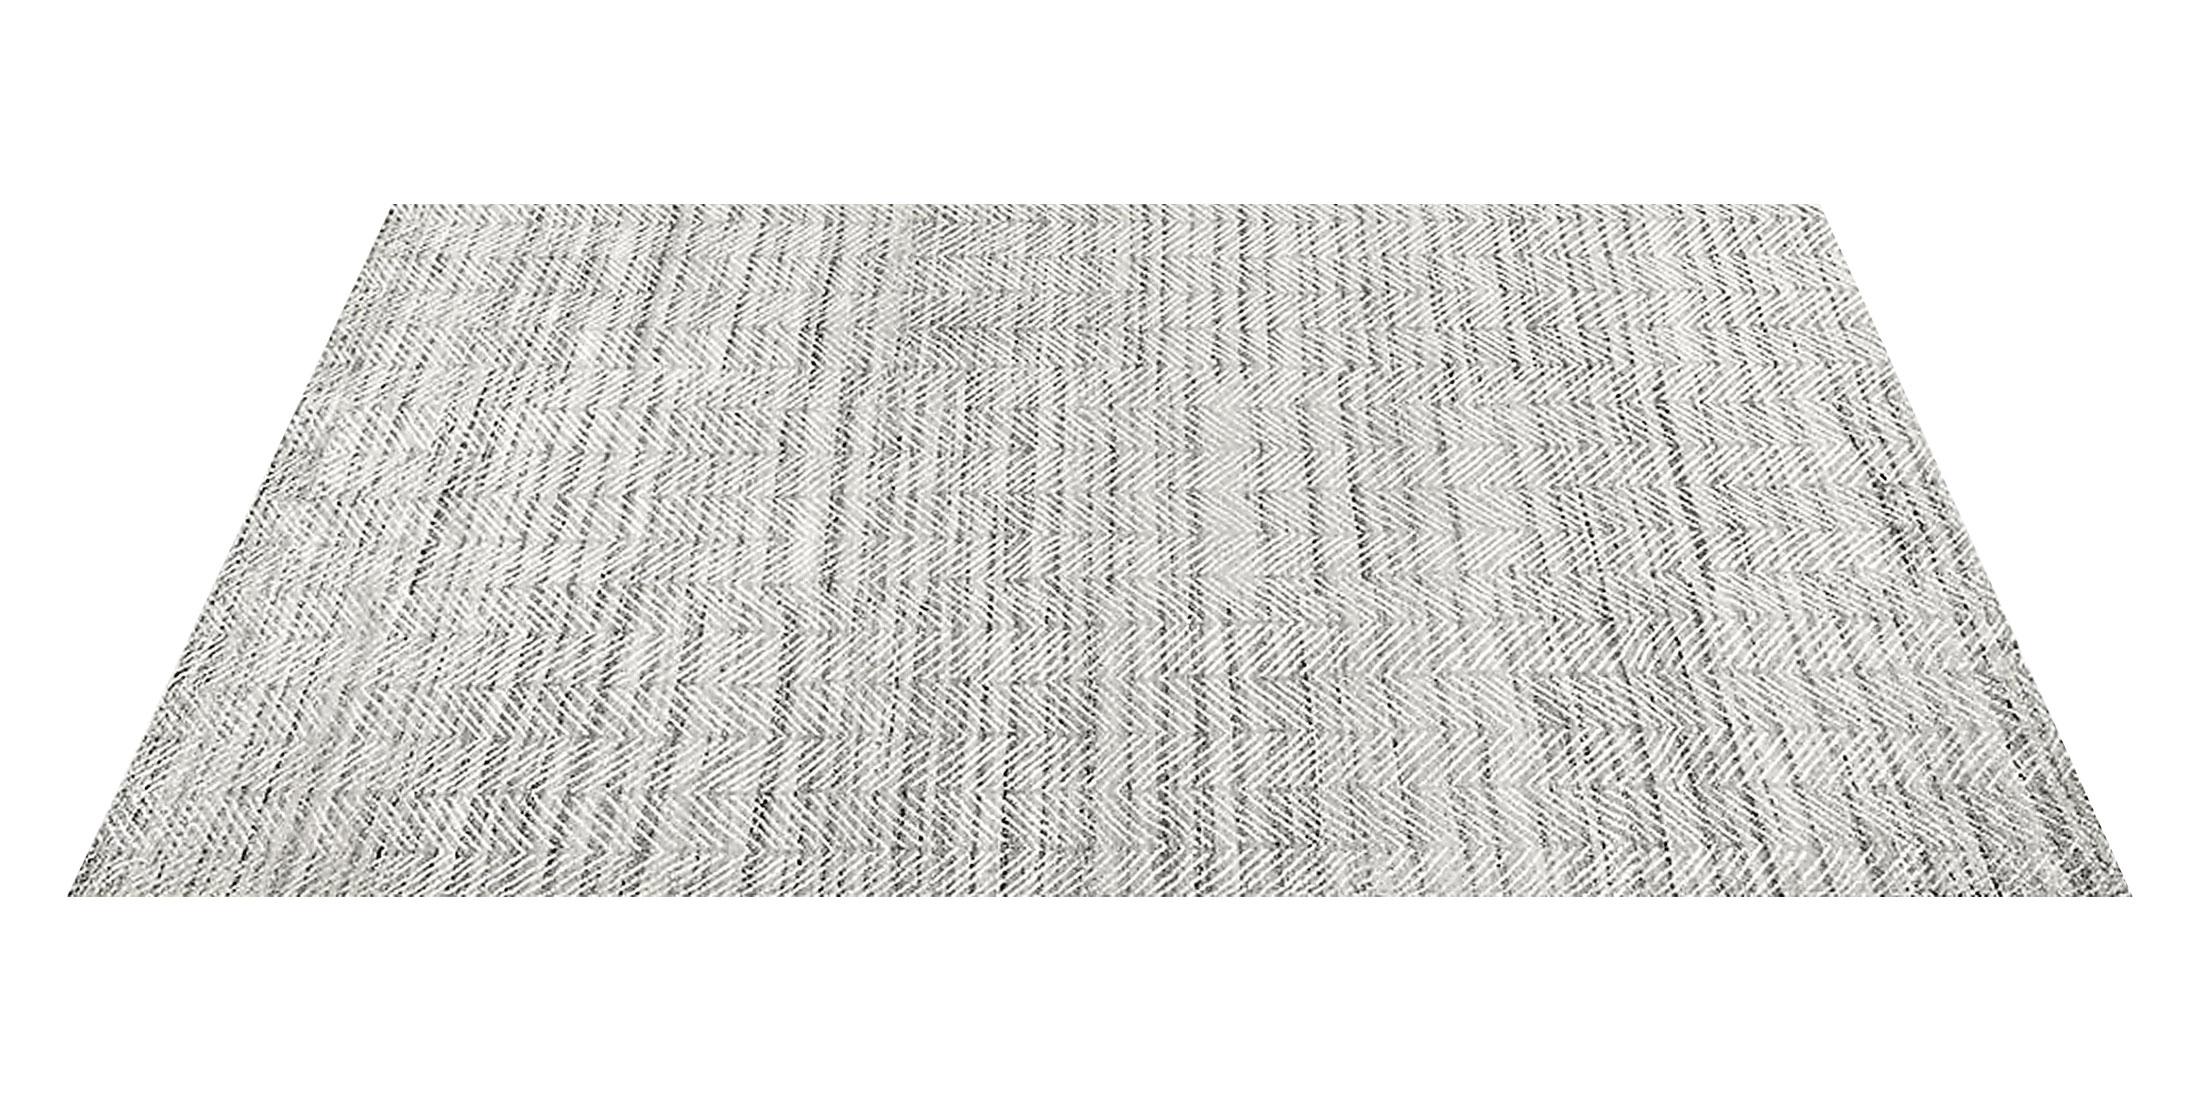 For Sale: Gray (Silver/White) Ben Soleimani Alia Rug– Hand-woven Chevron Wool + Viscose Black/Gray 8'x10' 2